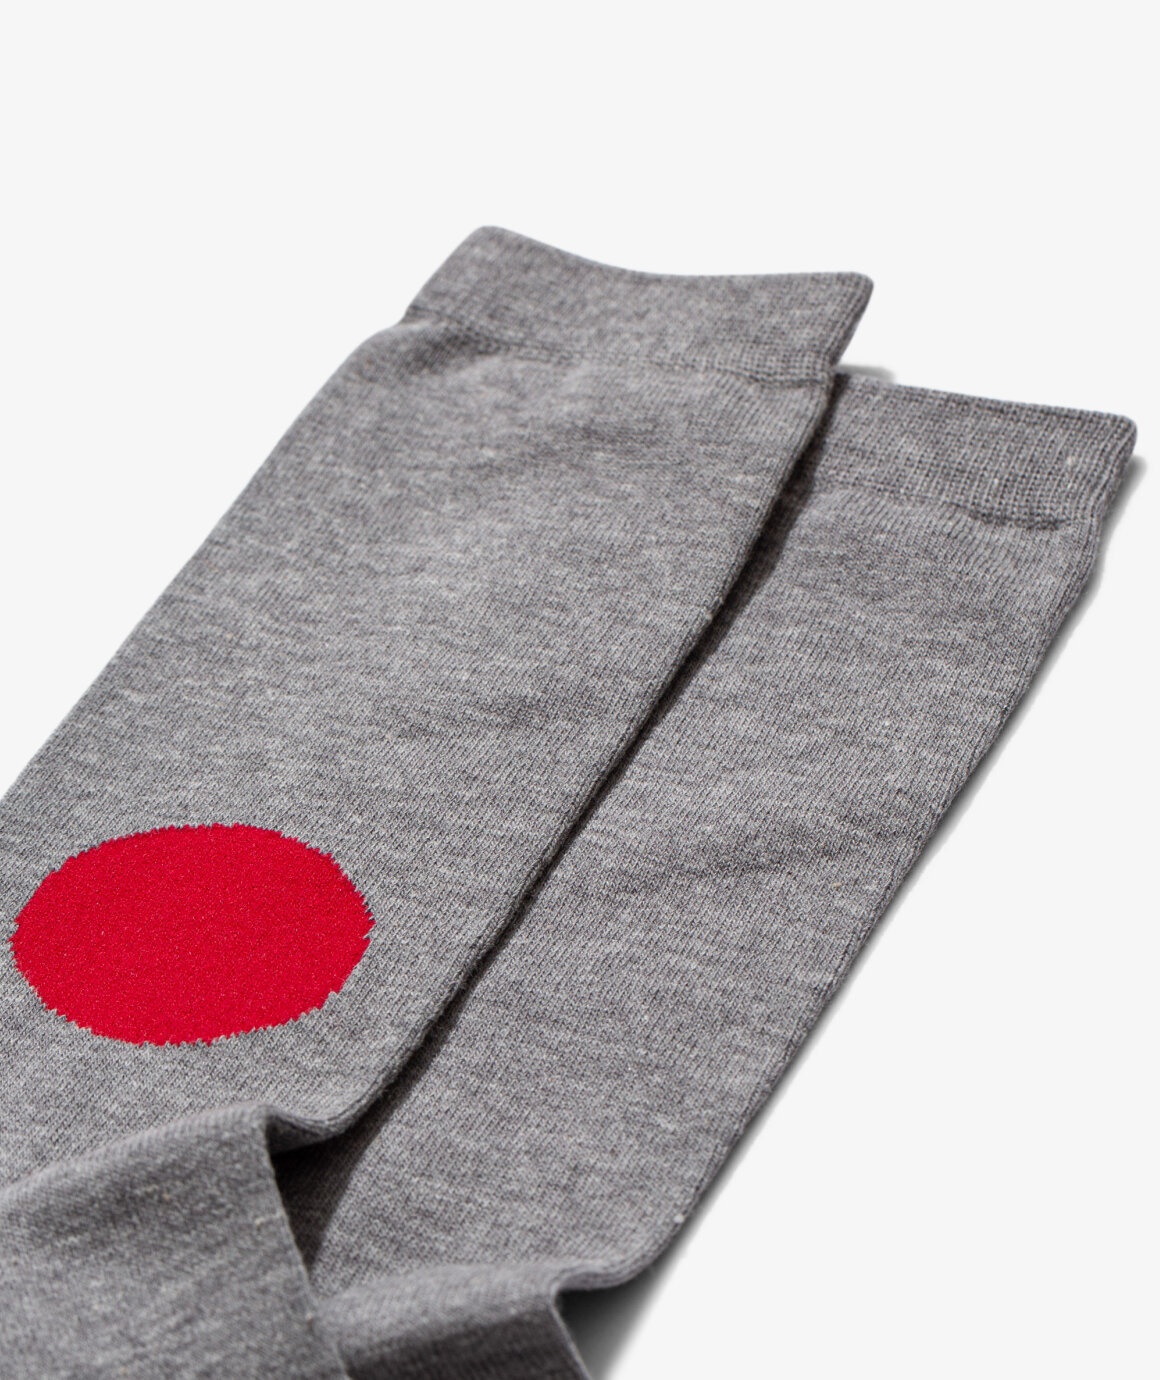 Japan Flag Socks - 3